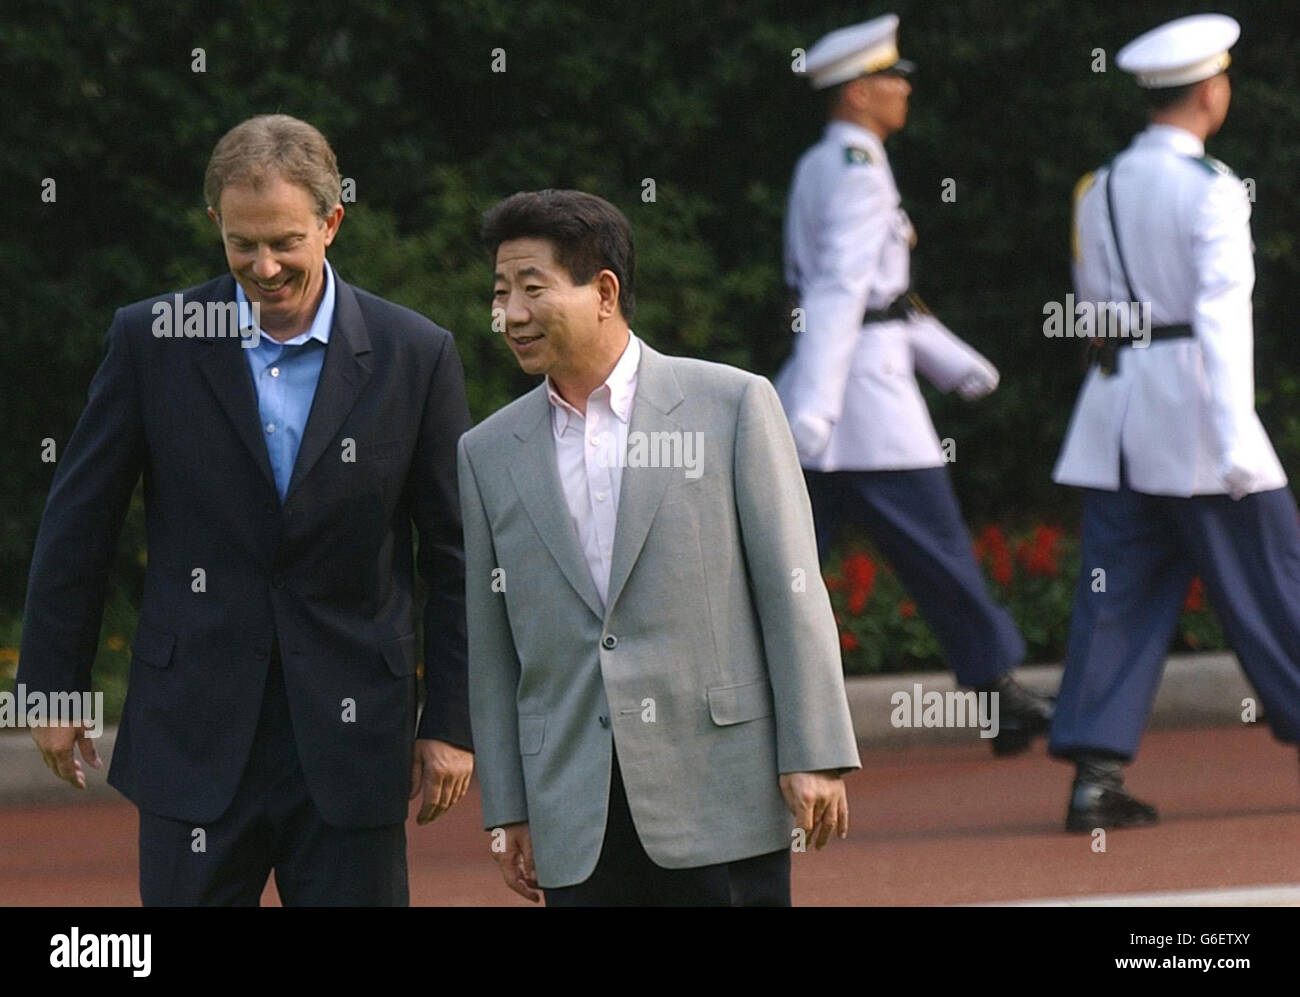 El primer ministro británico Tony Blair se reúne con el presidente surcoreano Roh en la Casa Azul, la residencia presidencial en Seúl durante su visita de una semana al extremo Oriente, que se realiza en Japón, Corea del Sur, China y Hong Kong. Foto de stock